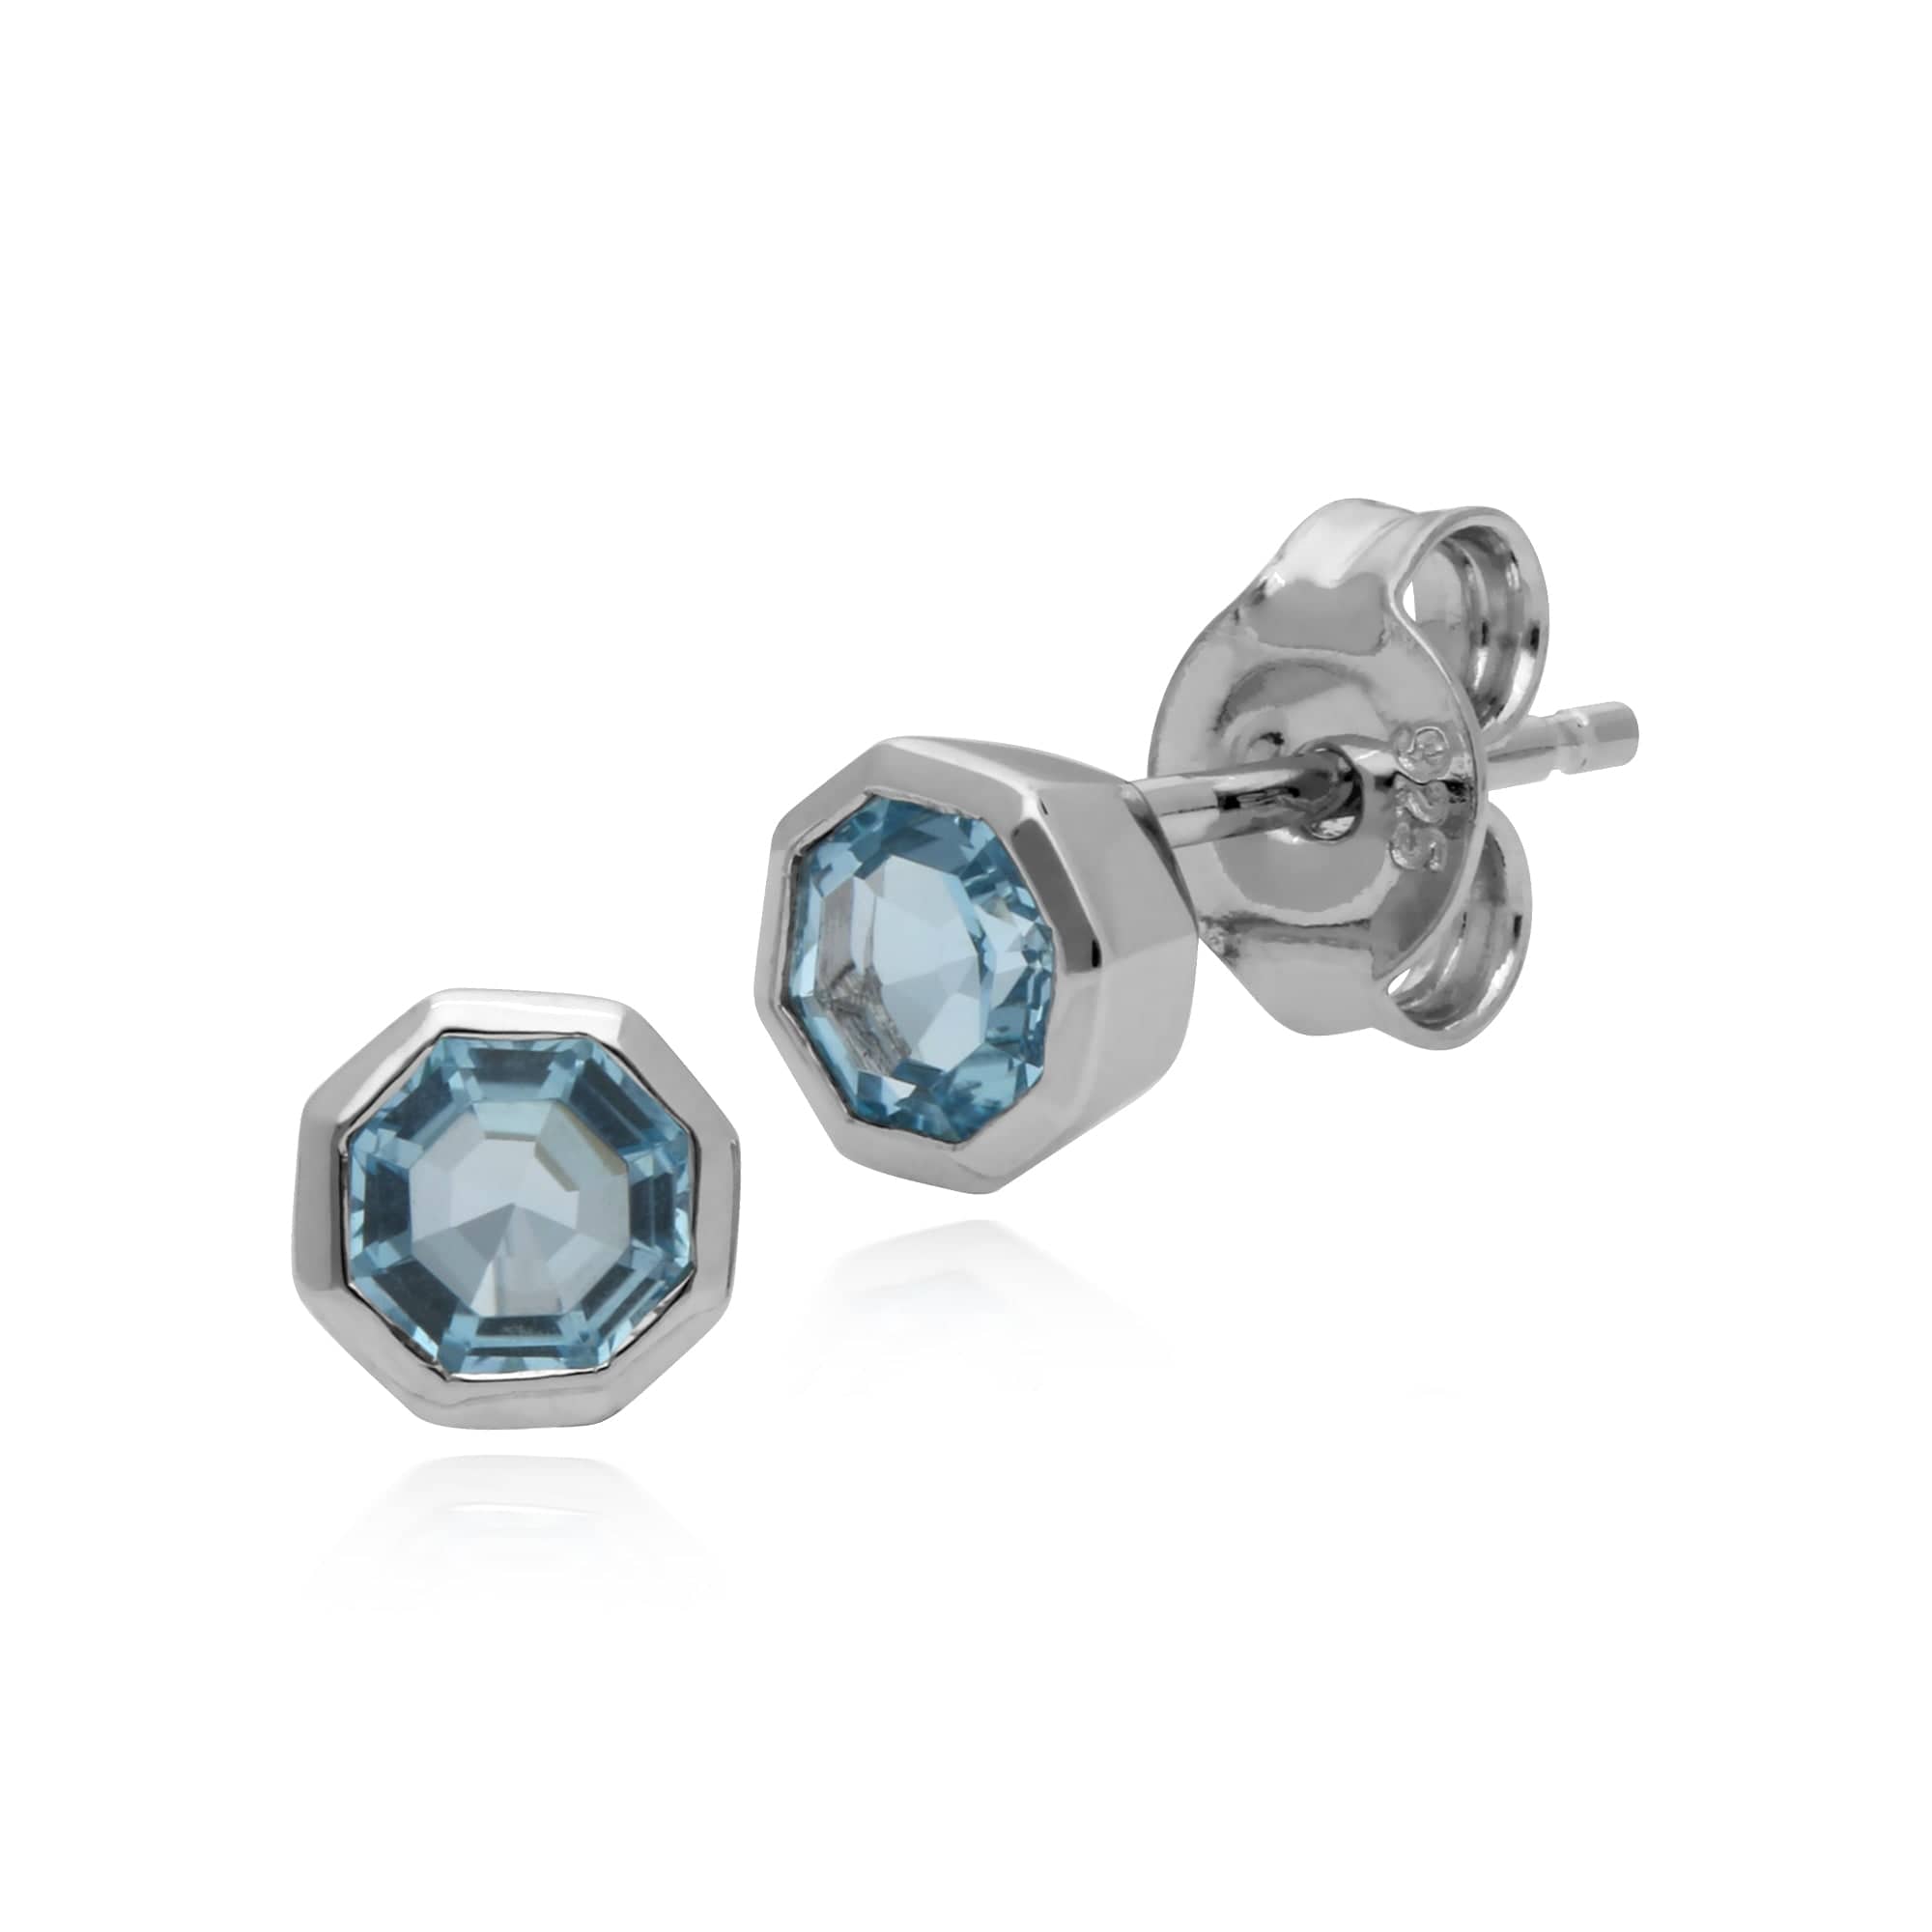 270E025002925-270R055701925 Geometric Octagon Blue Topaz Bezel Stud Earrings & Ring Set in 925 Sterling Silver 2